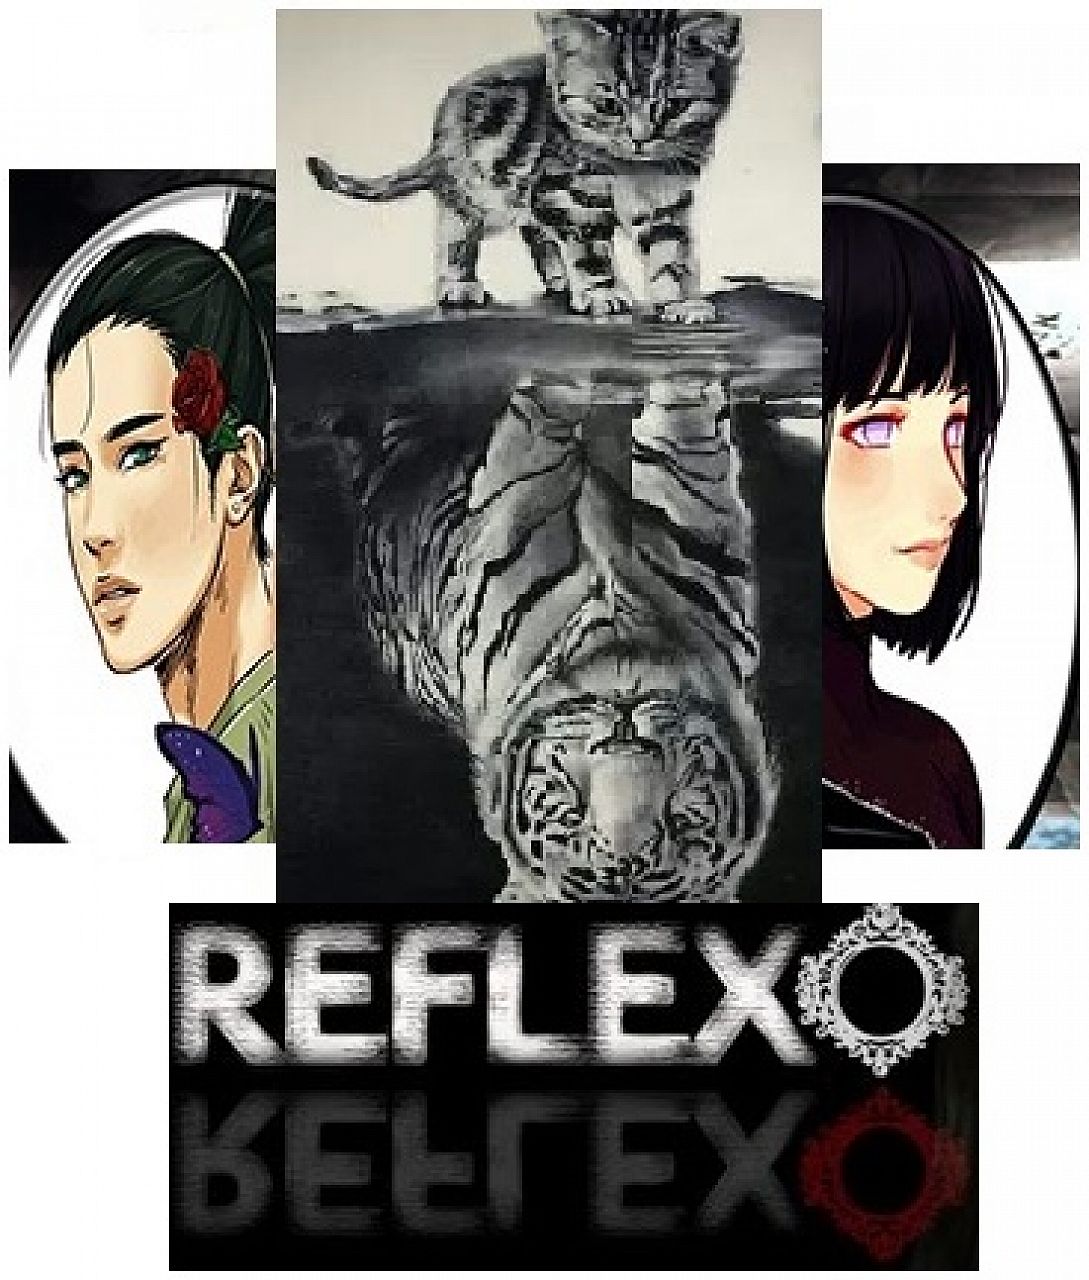 Reflexo